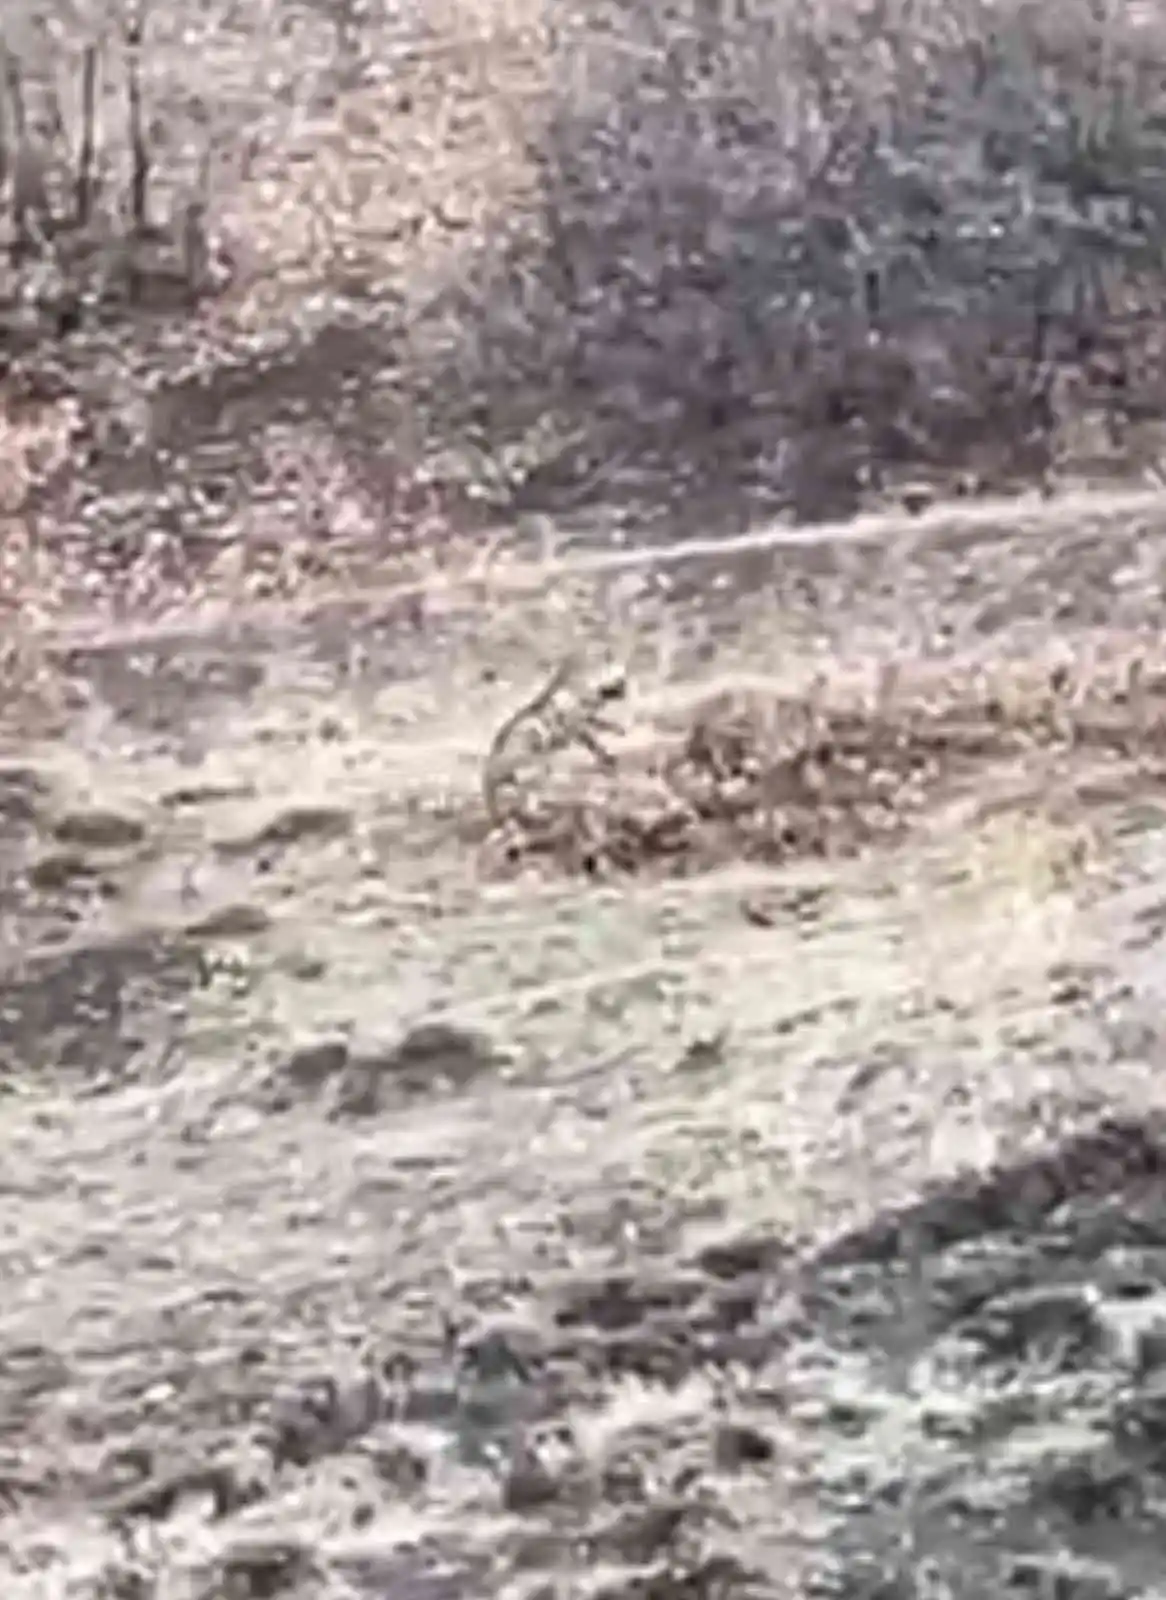 Nesli tükenme tehlikesi altındaki çizgili sırtlan Elazığ’da görüntülendi
